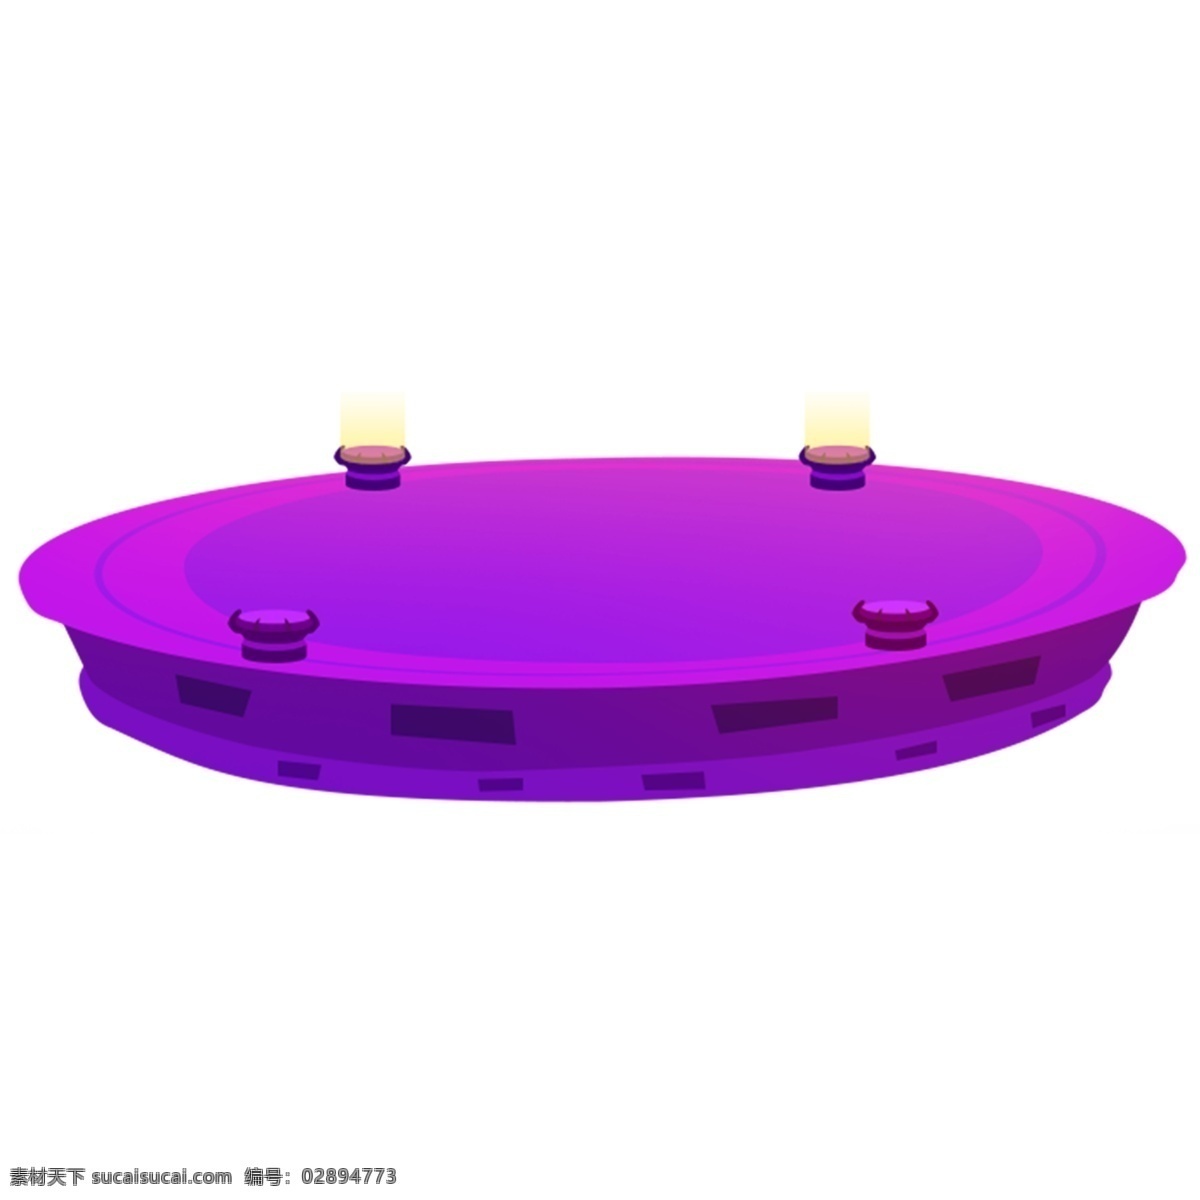 紫色 科技 感 舞台 卡通 未来感 圆形 装饰素材